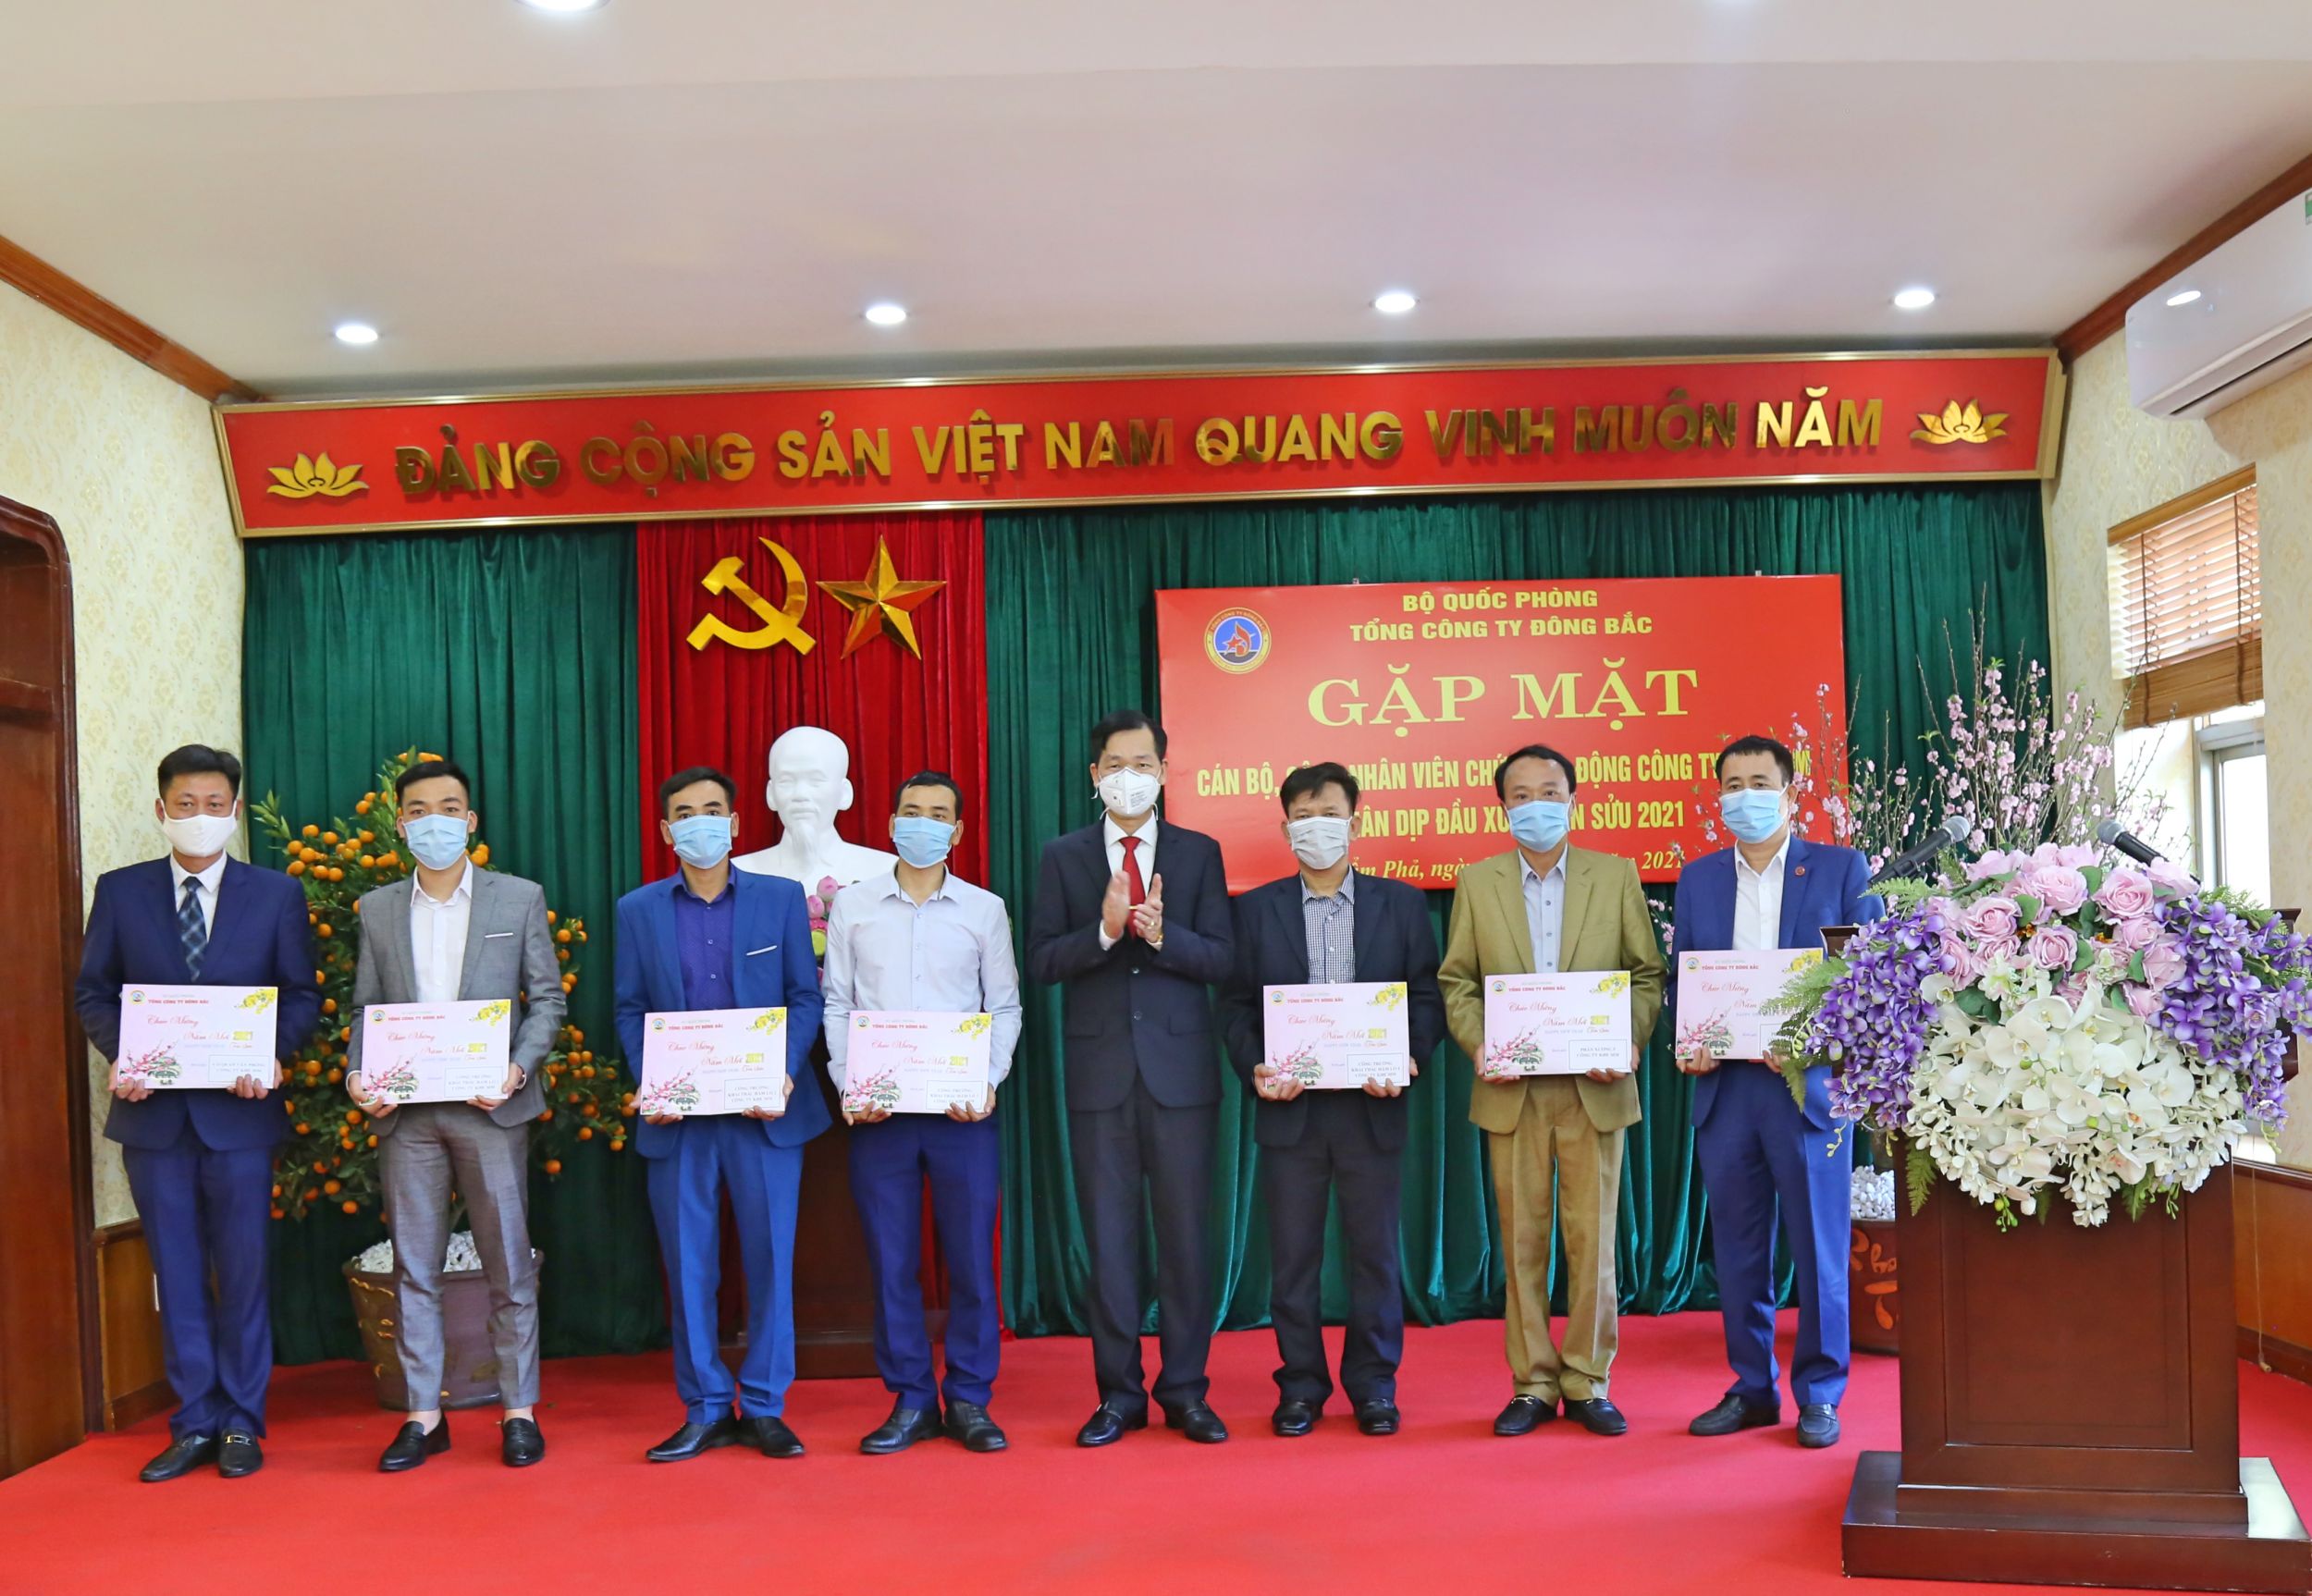 Đồng chí Phương Kim Minh - Phó Bí thư Đảng ủy, Tổng Giám đốc Tổng công ty tặng quà Tết cho đại diện cán bộ, CNVC, lao động các cơ quan, công trường, phân xưởng Công ty Khe Sim